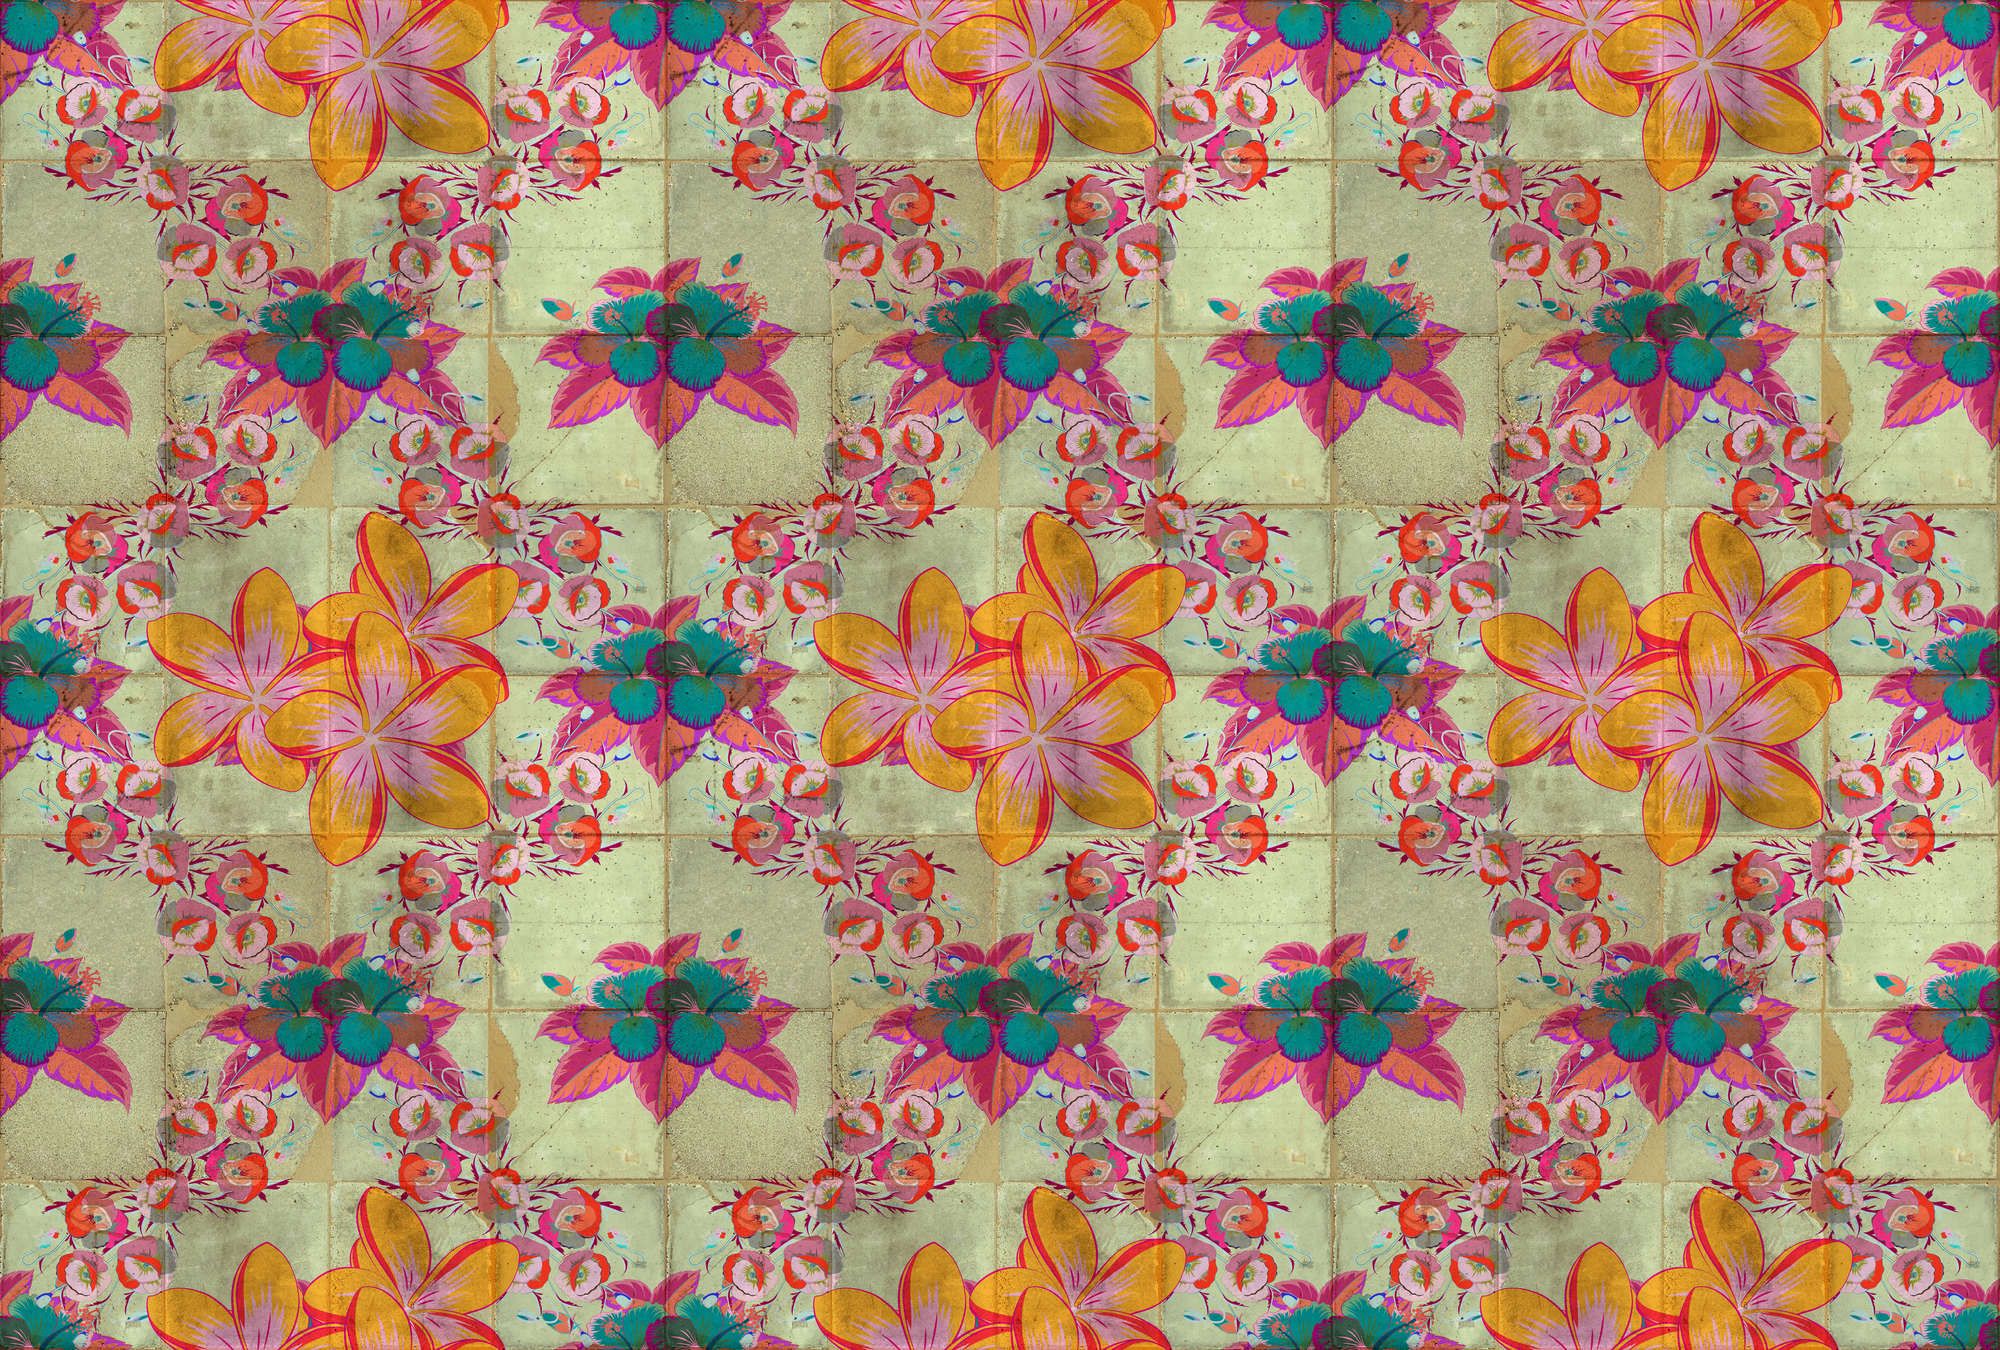             Fototapete »jolie« - Blütendesign mit Kaleidoskopeffekt auf Betonfliesenstruktur – Glattes, leicht perlmutt-schimmerndes Vlies
        